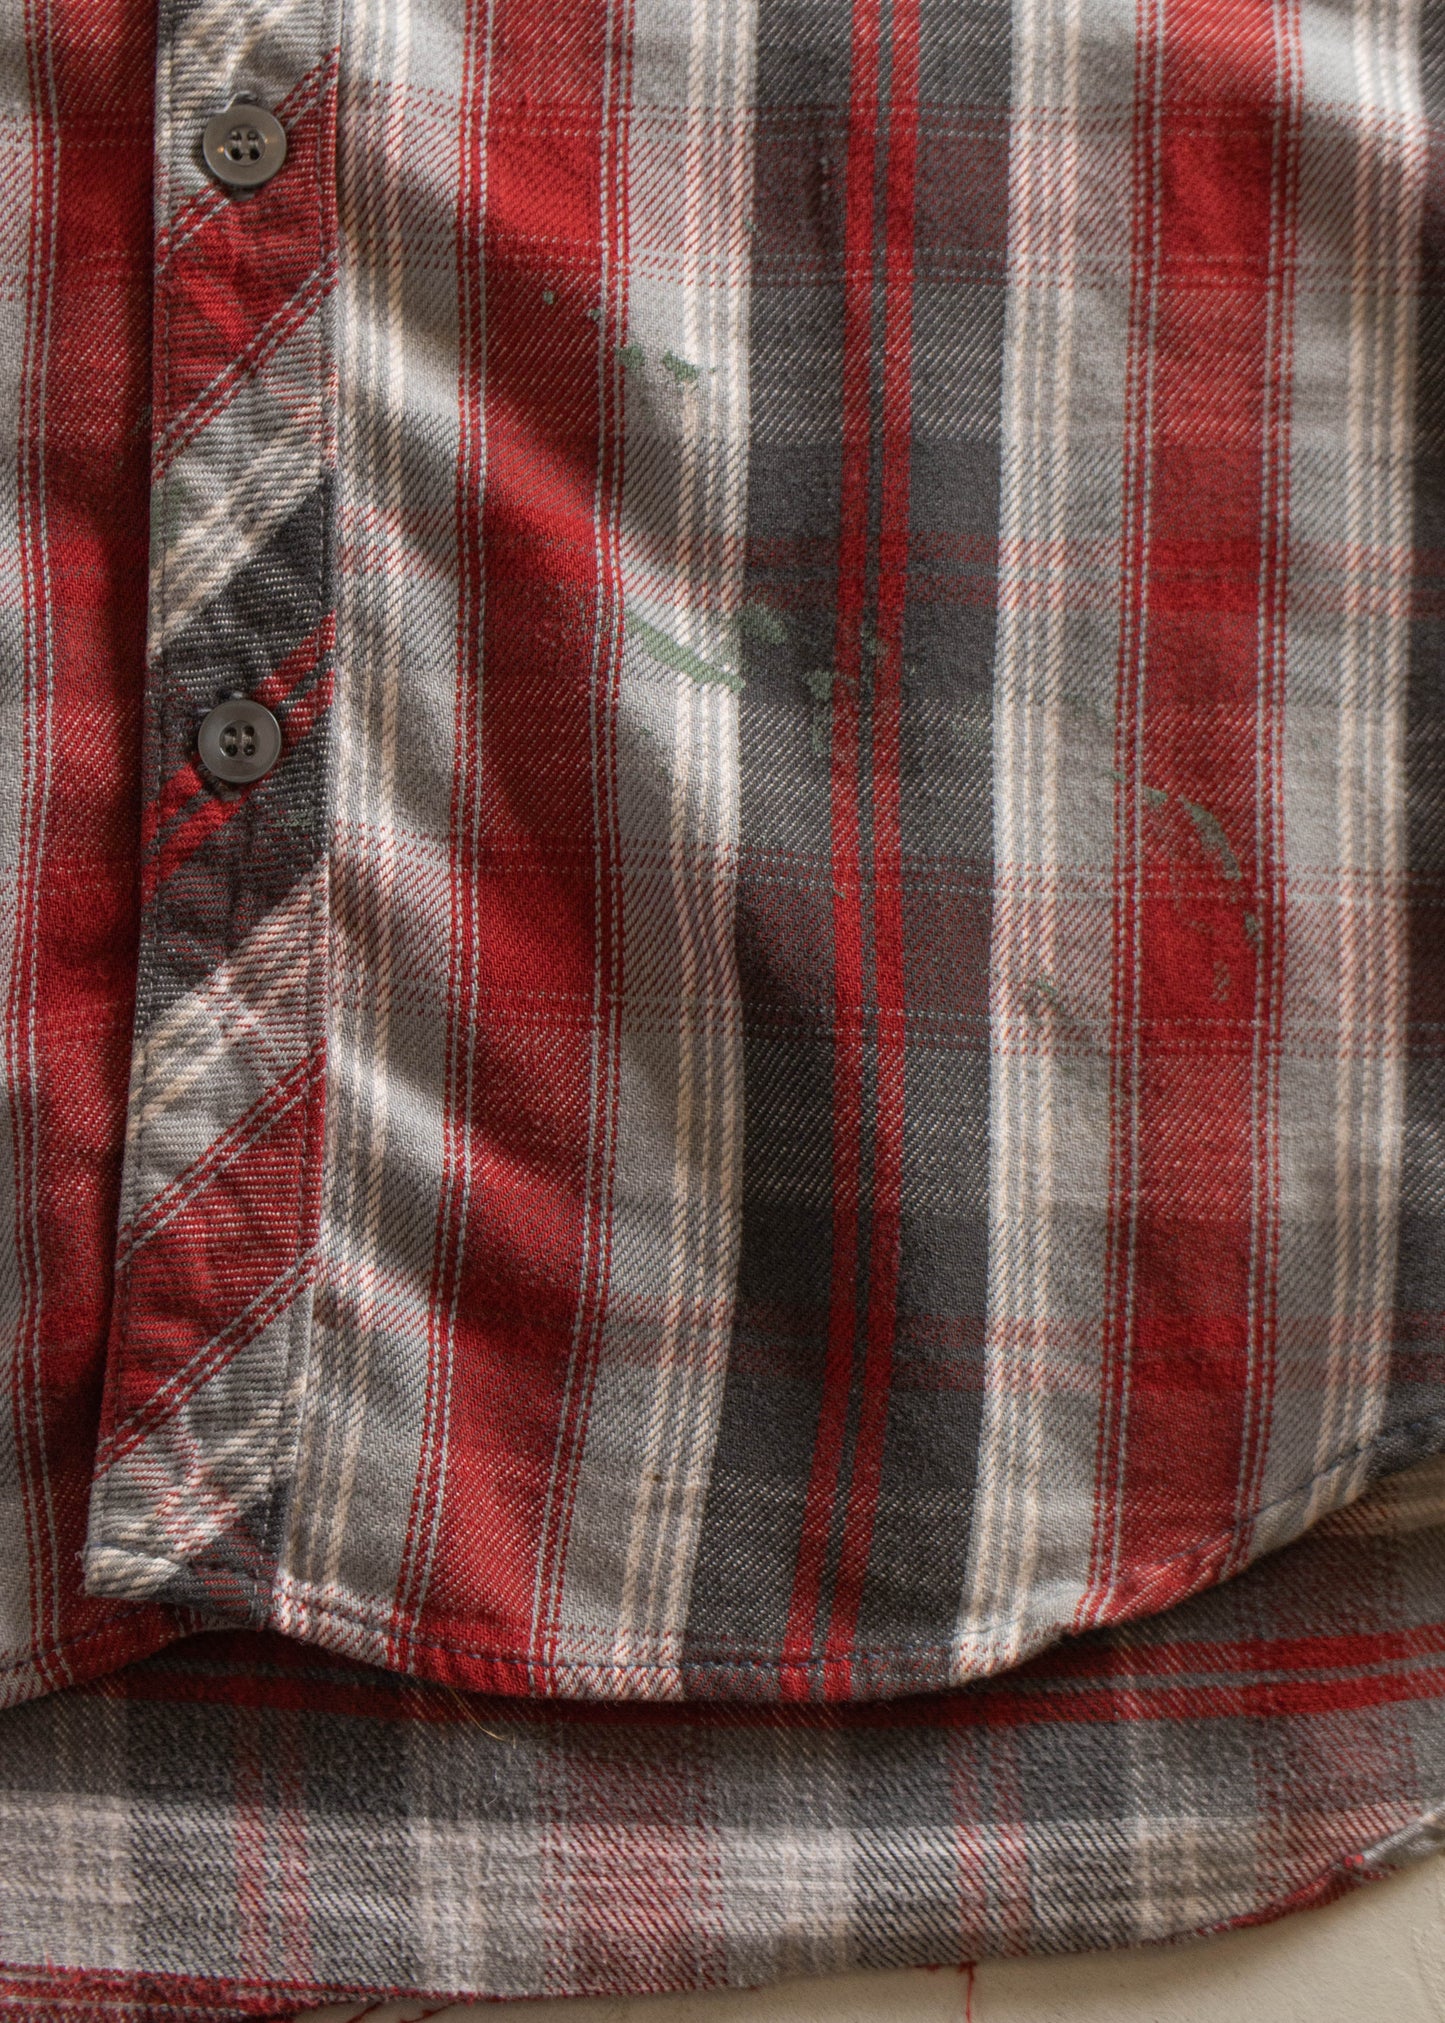 1970s Regent Cotton Flannel Button Up Shirt Size M/L